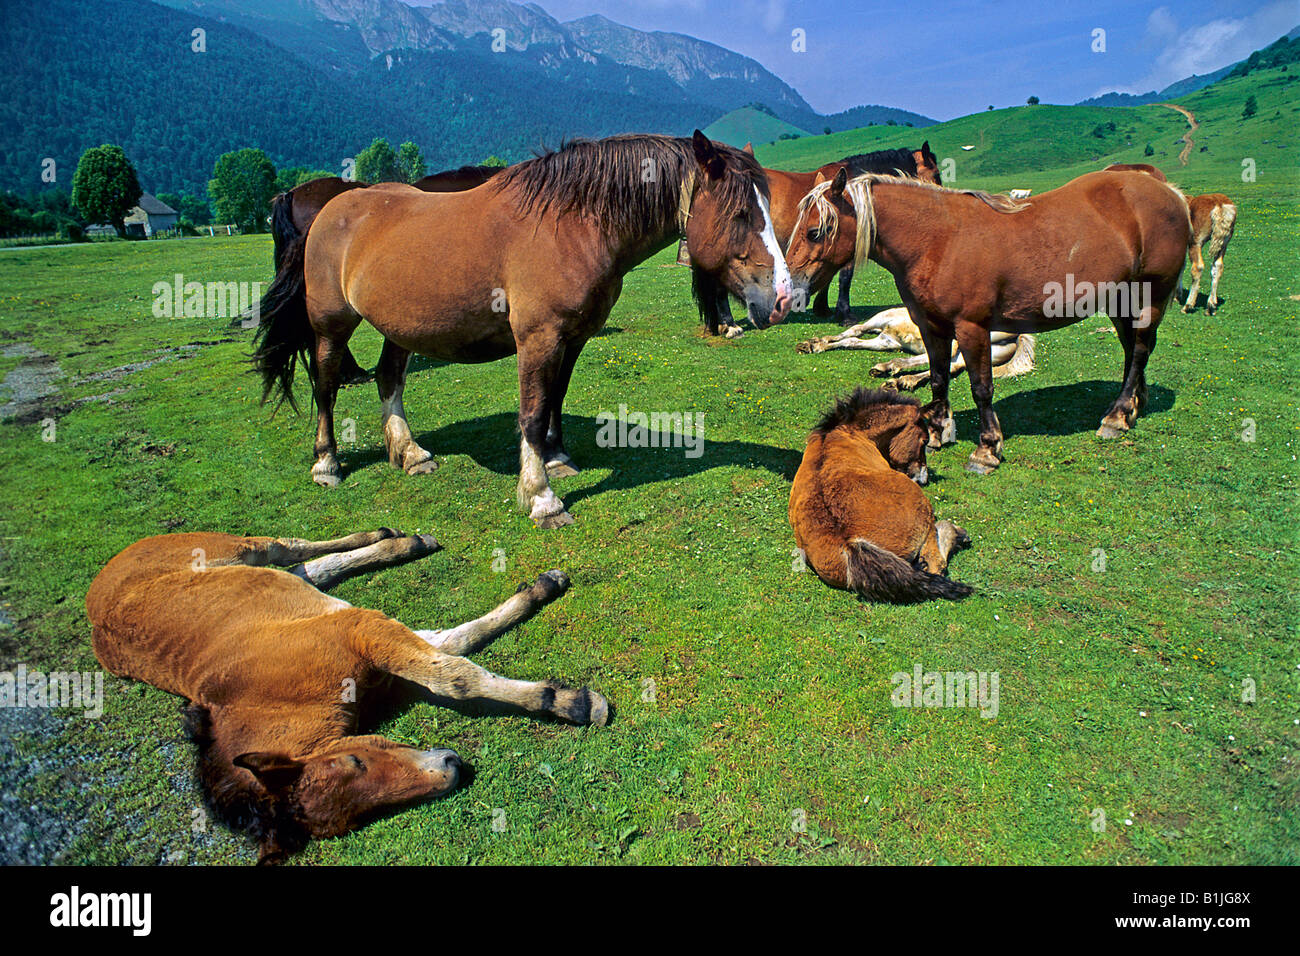 inländische Pferd (Equus Przewalskii F. Caballus), Pferde im Nationalpark Pyrnes, Frankreich, Pyrenaeen, Pyrenaeen Nationalpark Stockfoto